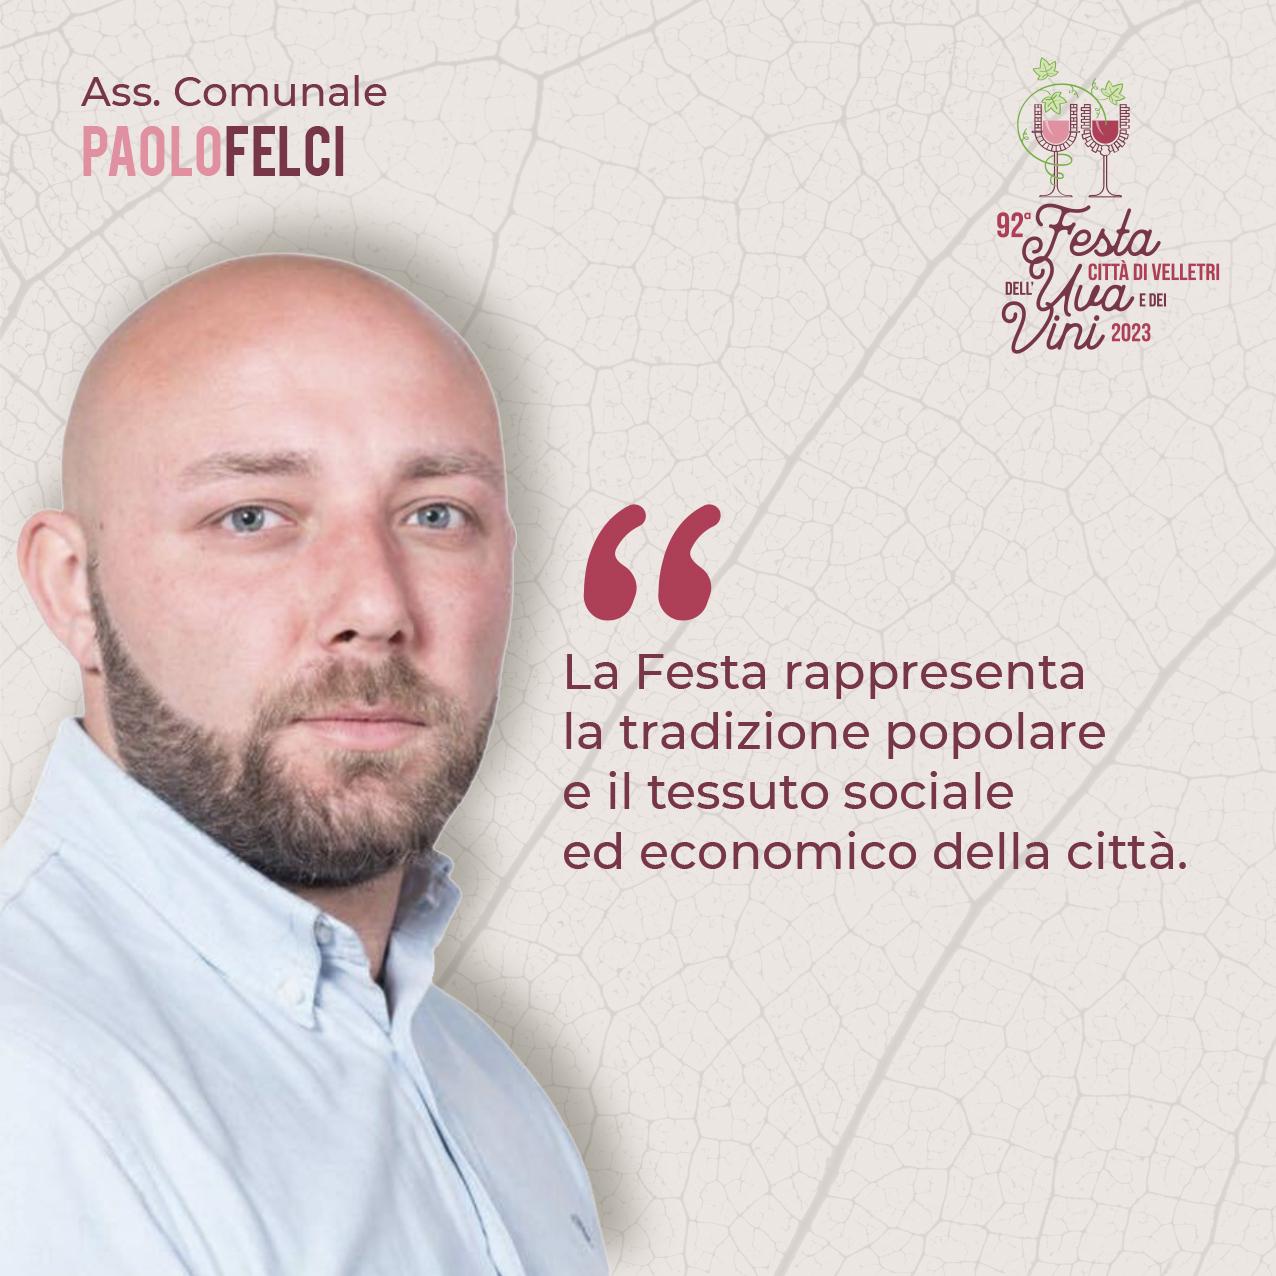 Intervista all’Assessore Paolo Felci: “Viviamo appieno questi due giorni di Festa”